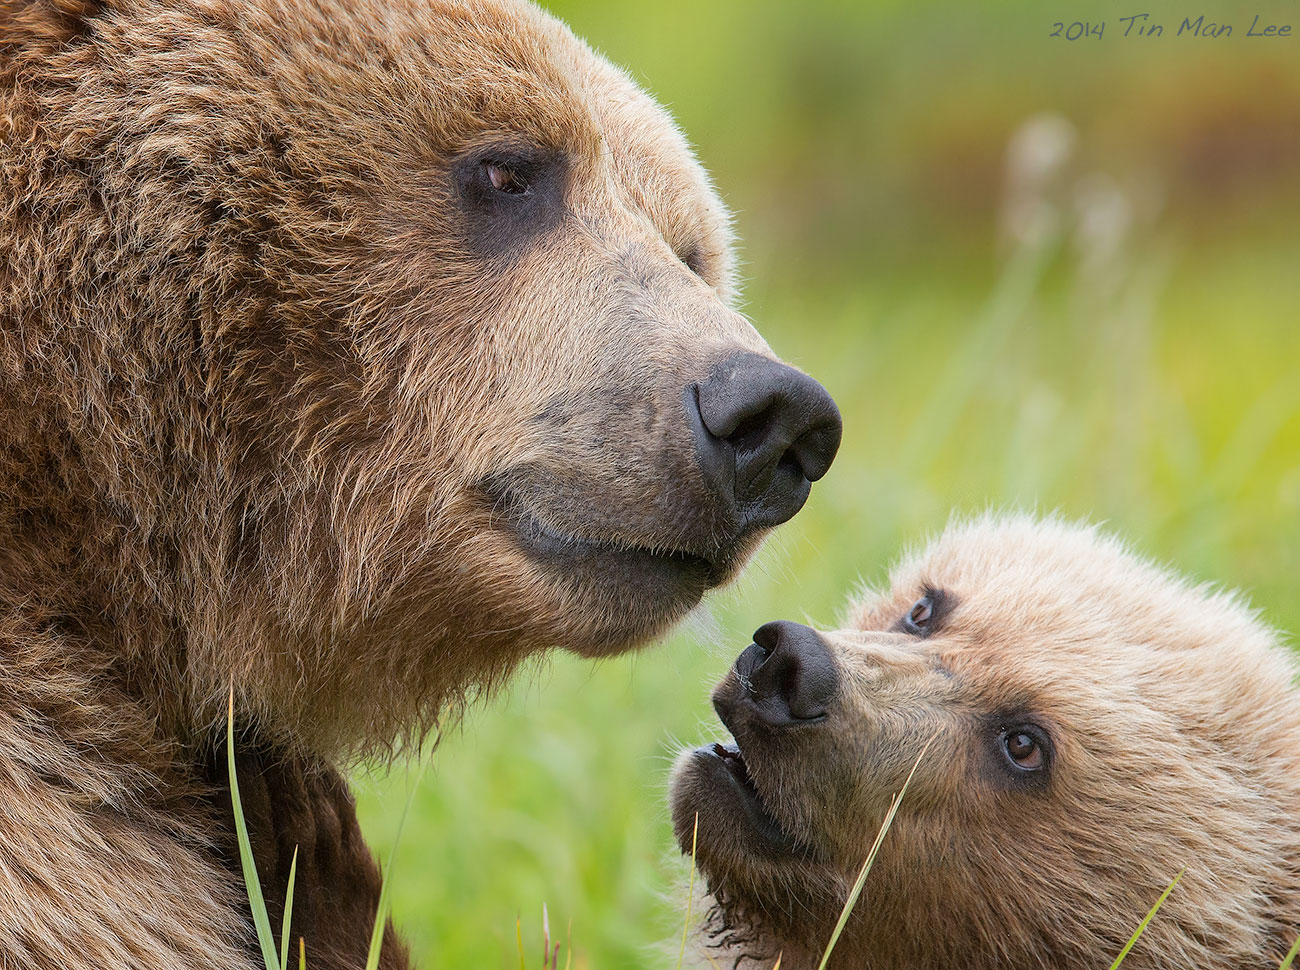 Mama bear and baby bear